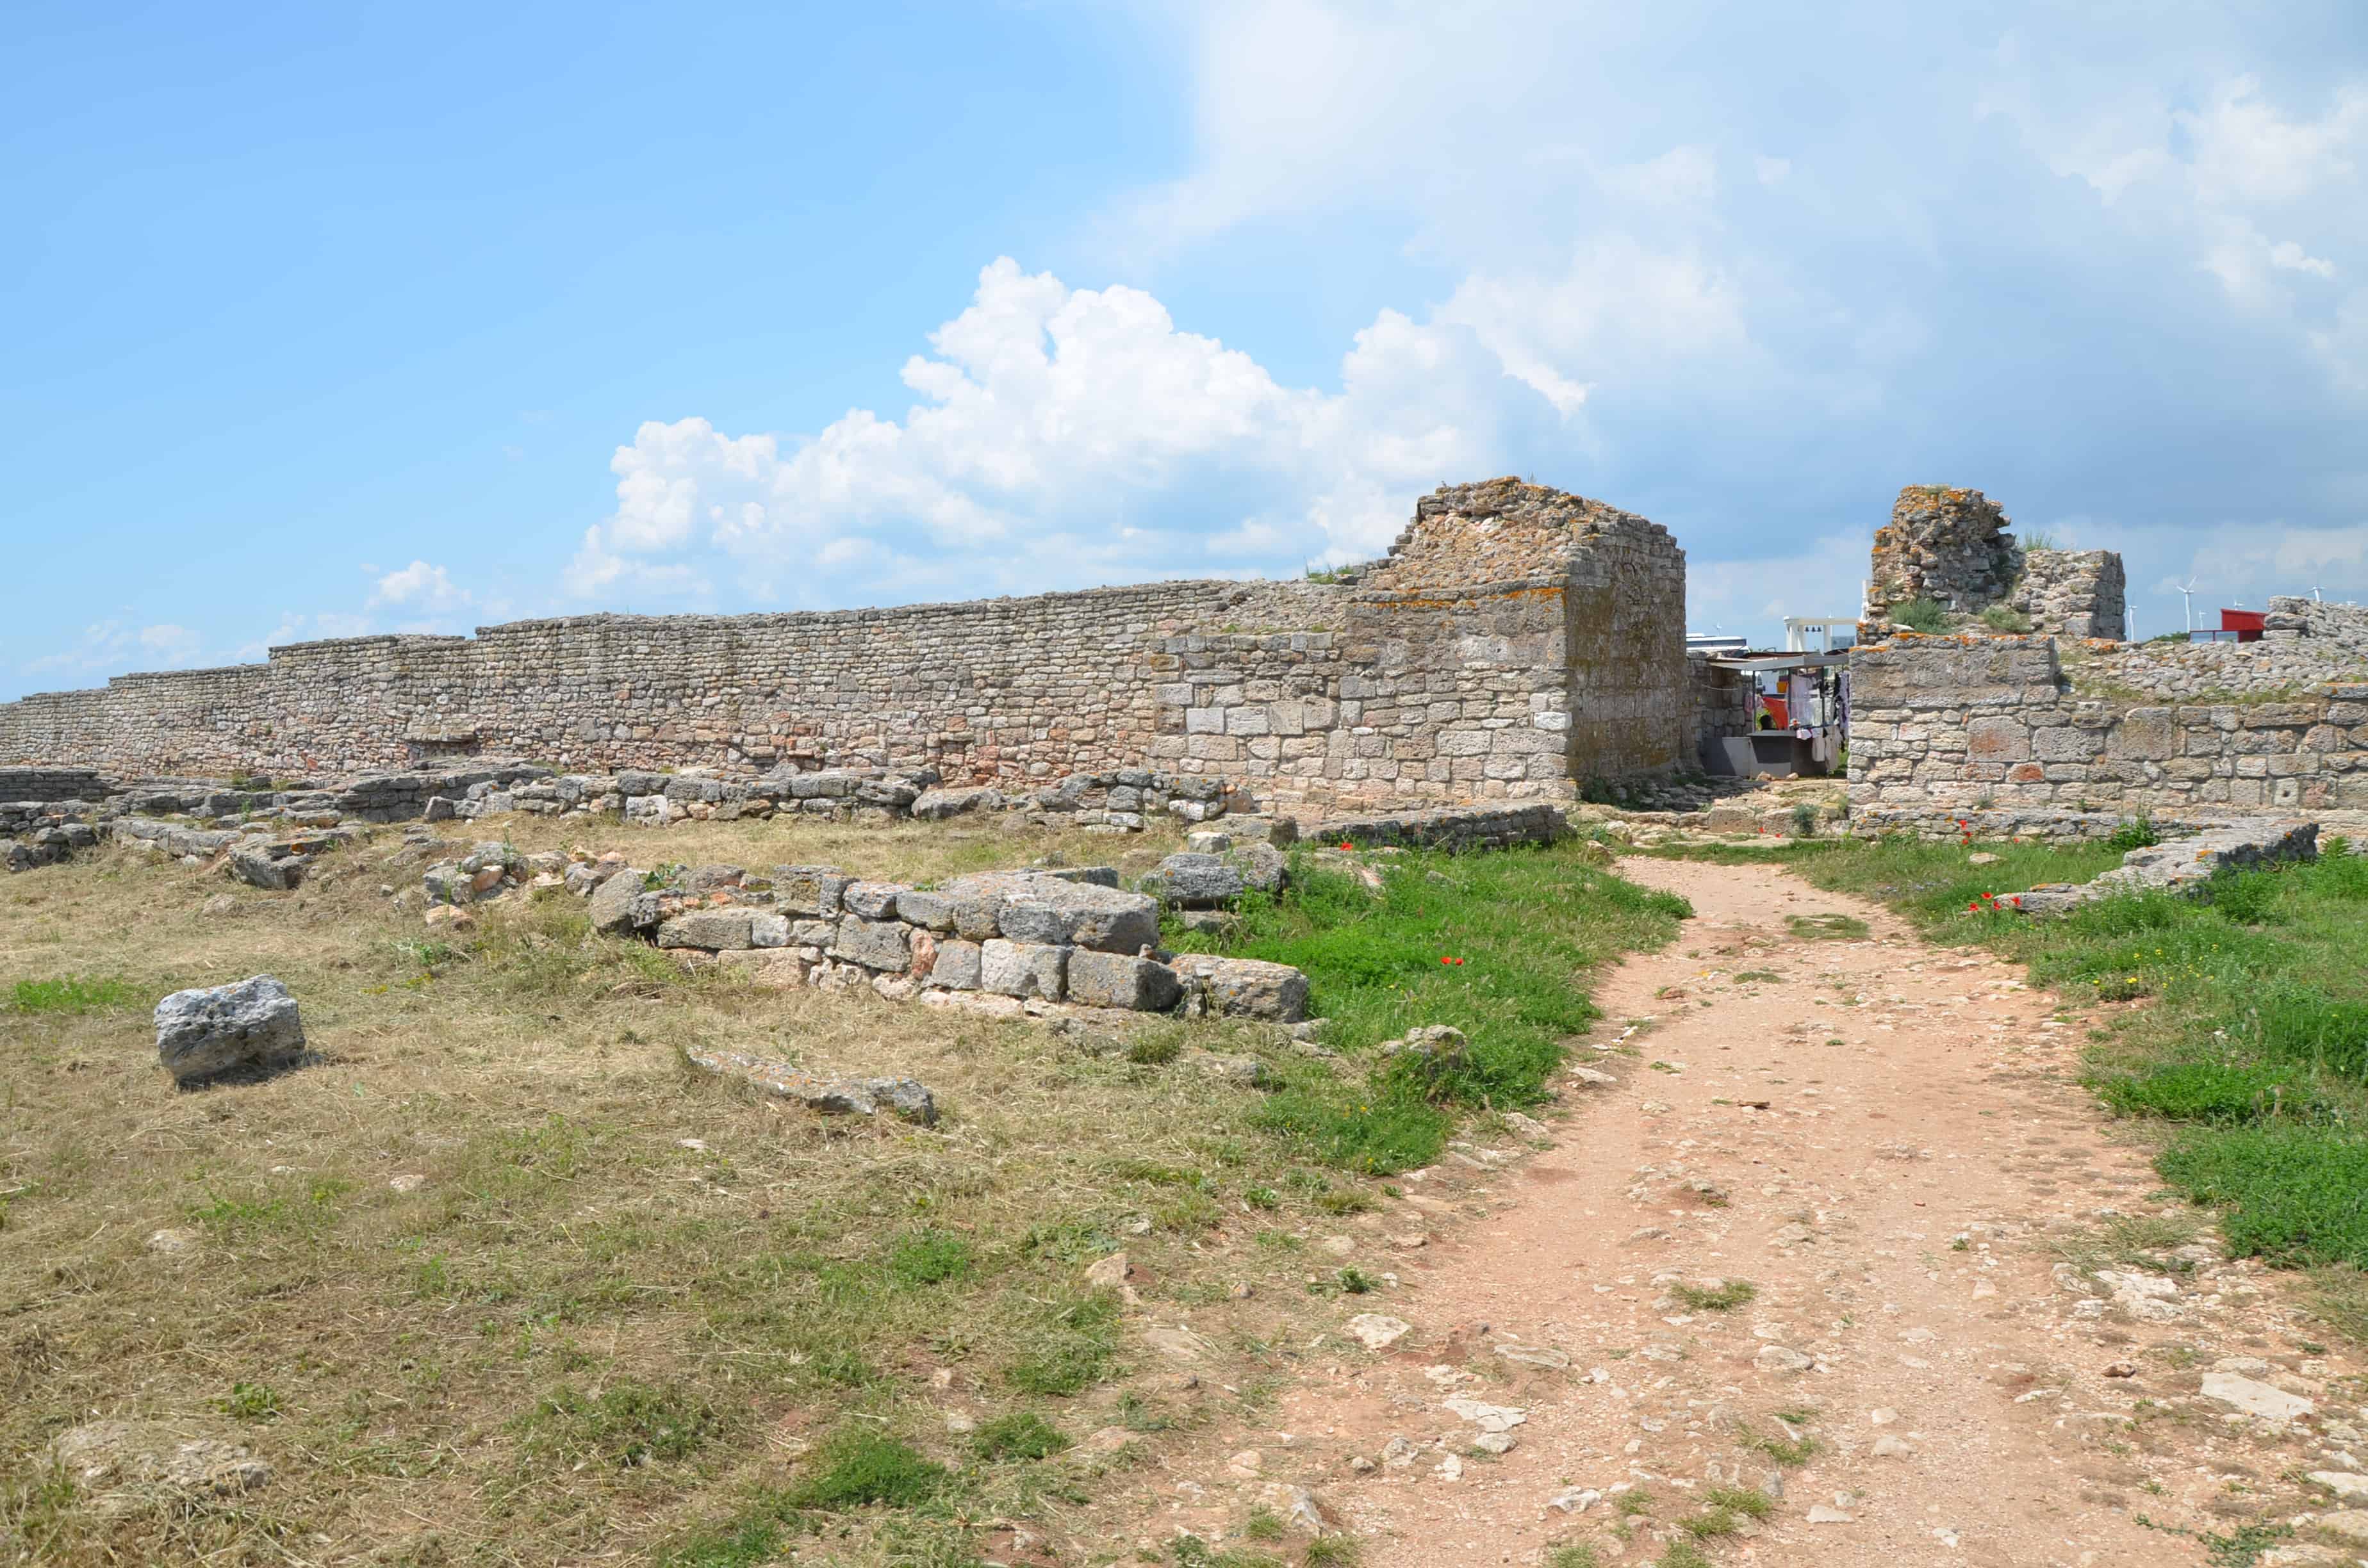 Second defensive wall at Kaliakra, Bulgaria